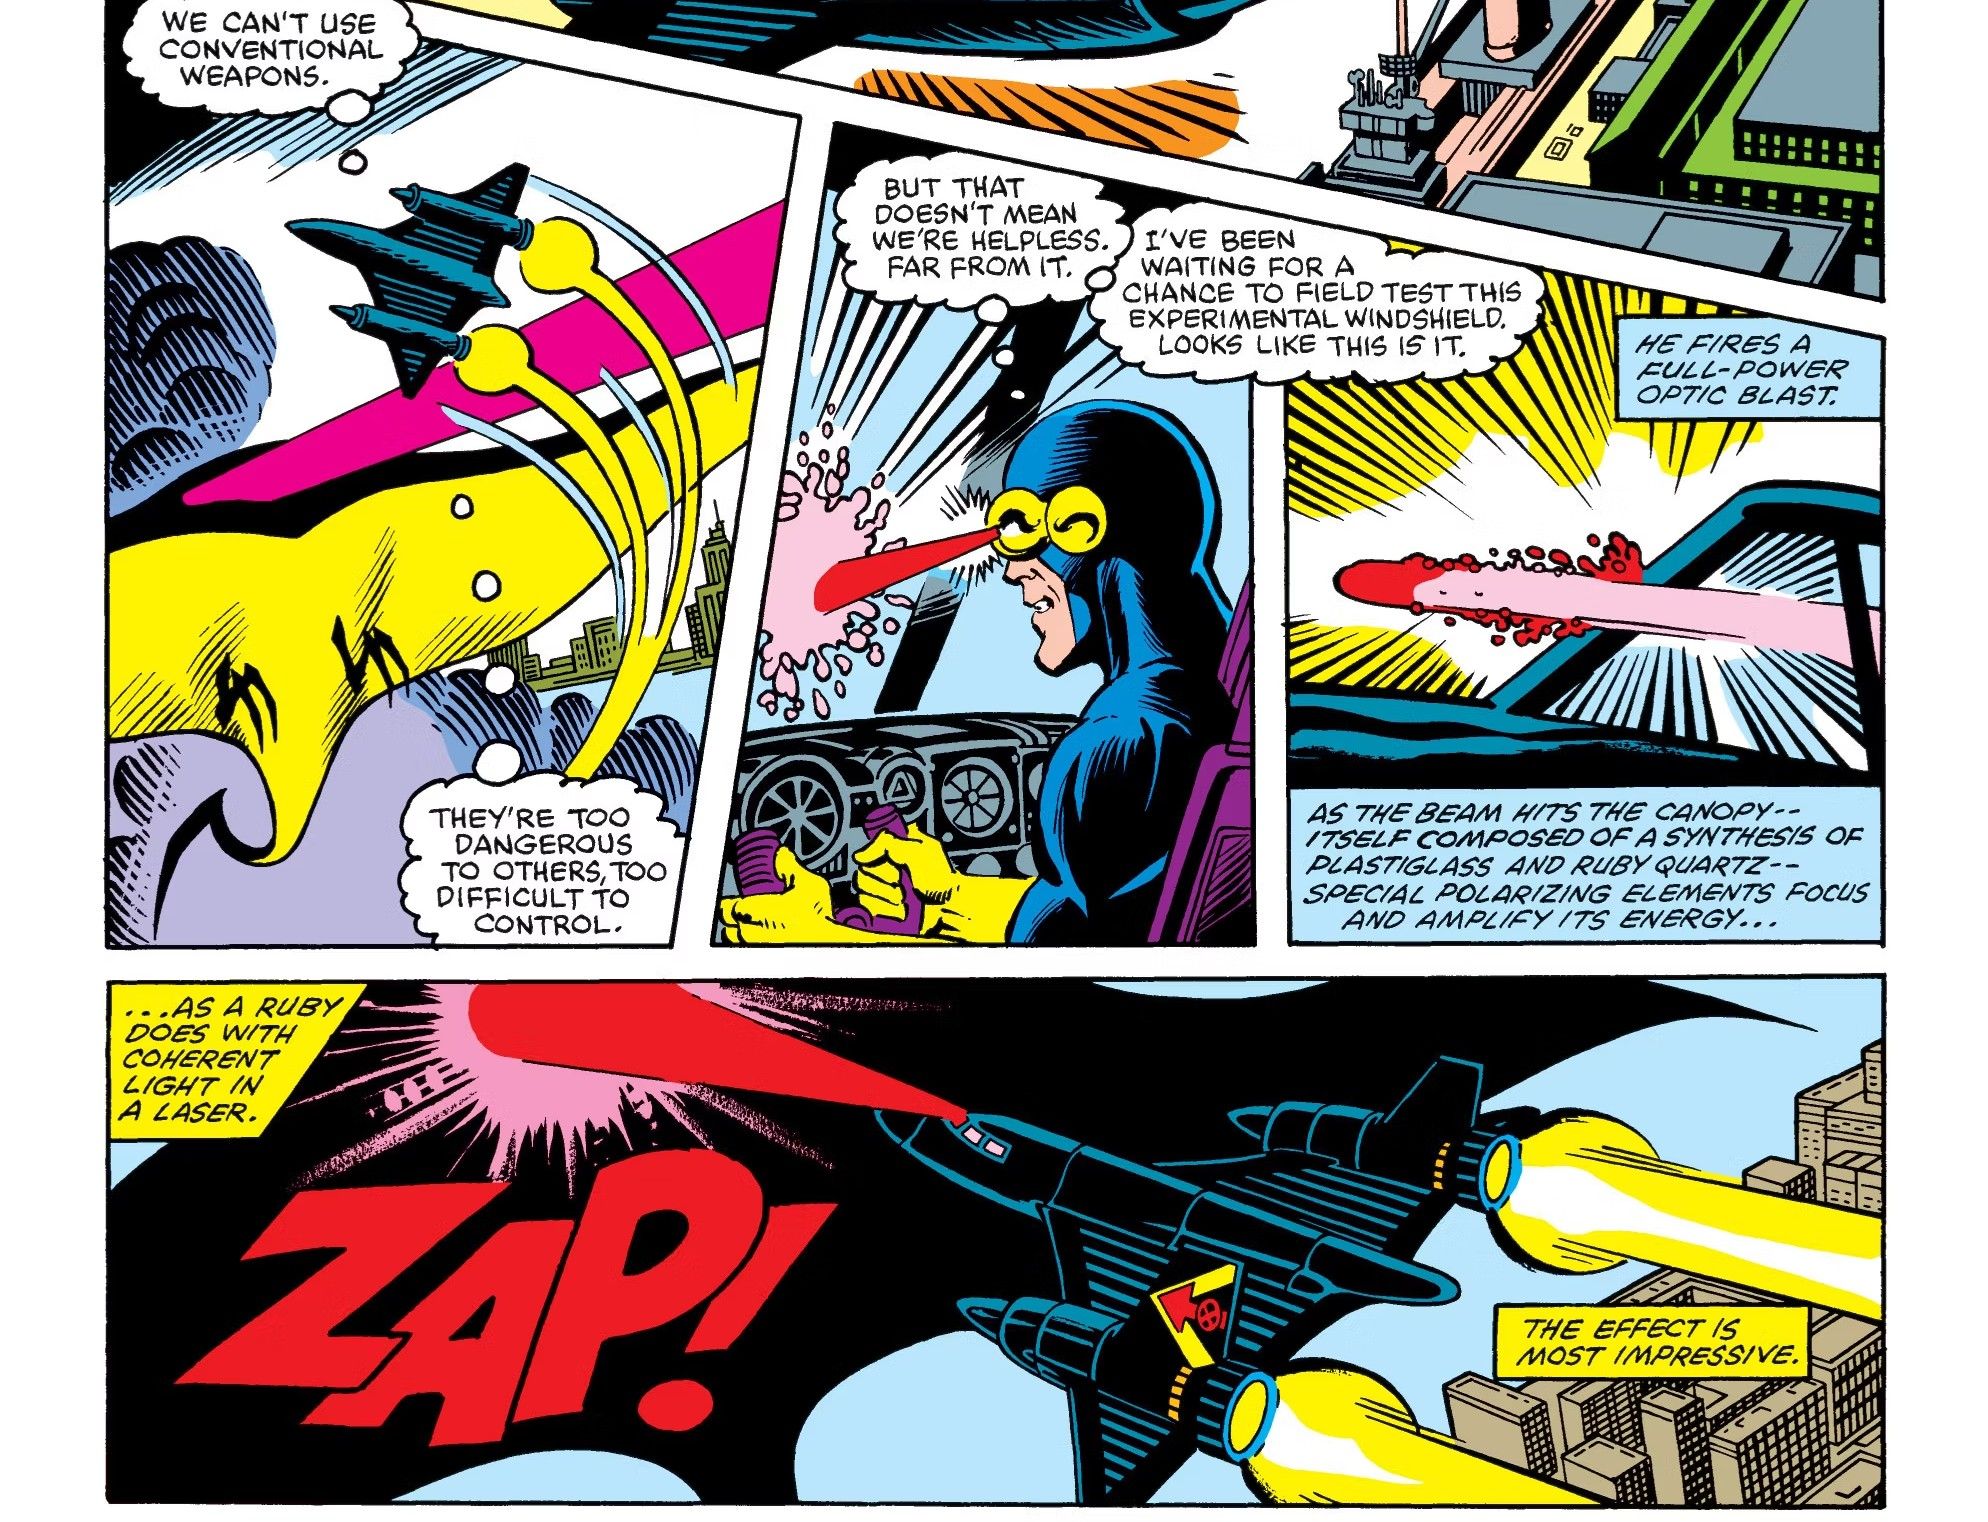 X-MEN'S CYCLOPS FIRES HIS POWER THROUGH THE BLACKBIRD'S VISOR